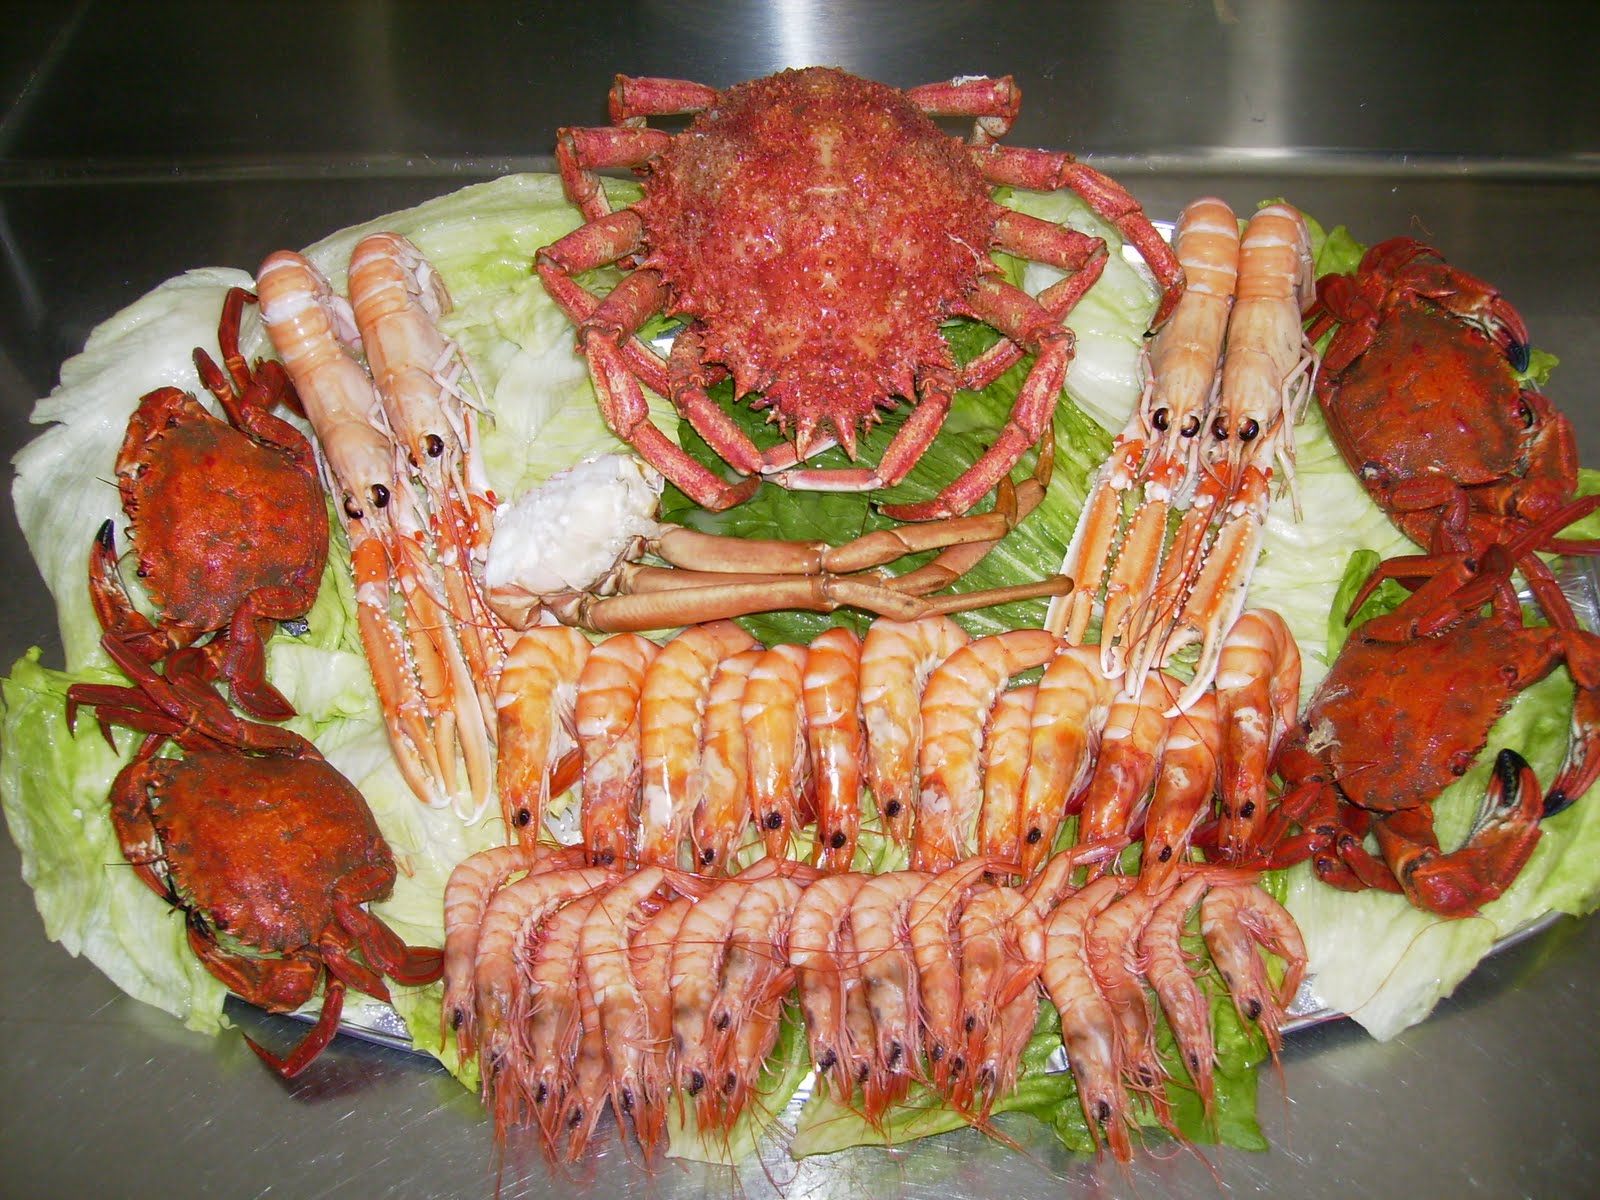 Gastronomía Kiefer: Los Mariscos: Crustáceos y Moluscos.